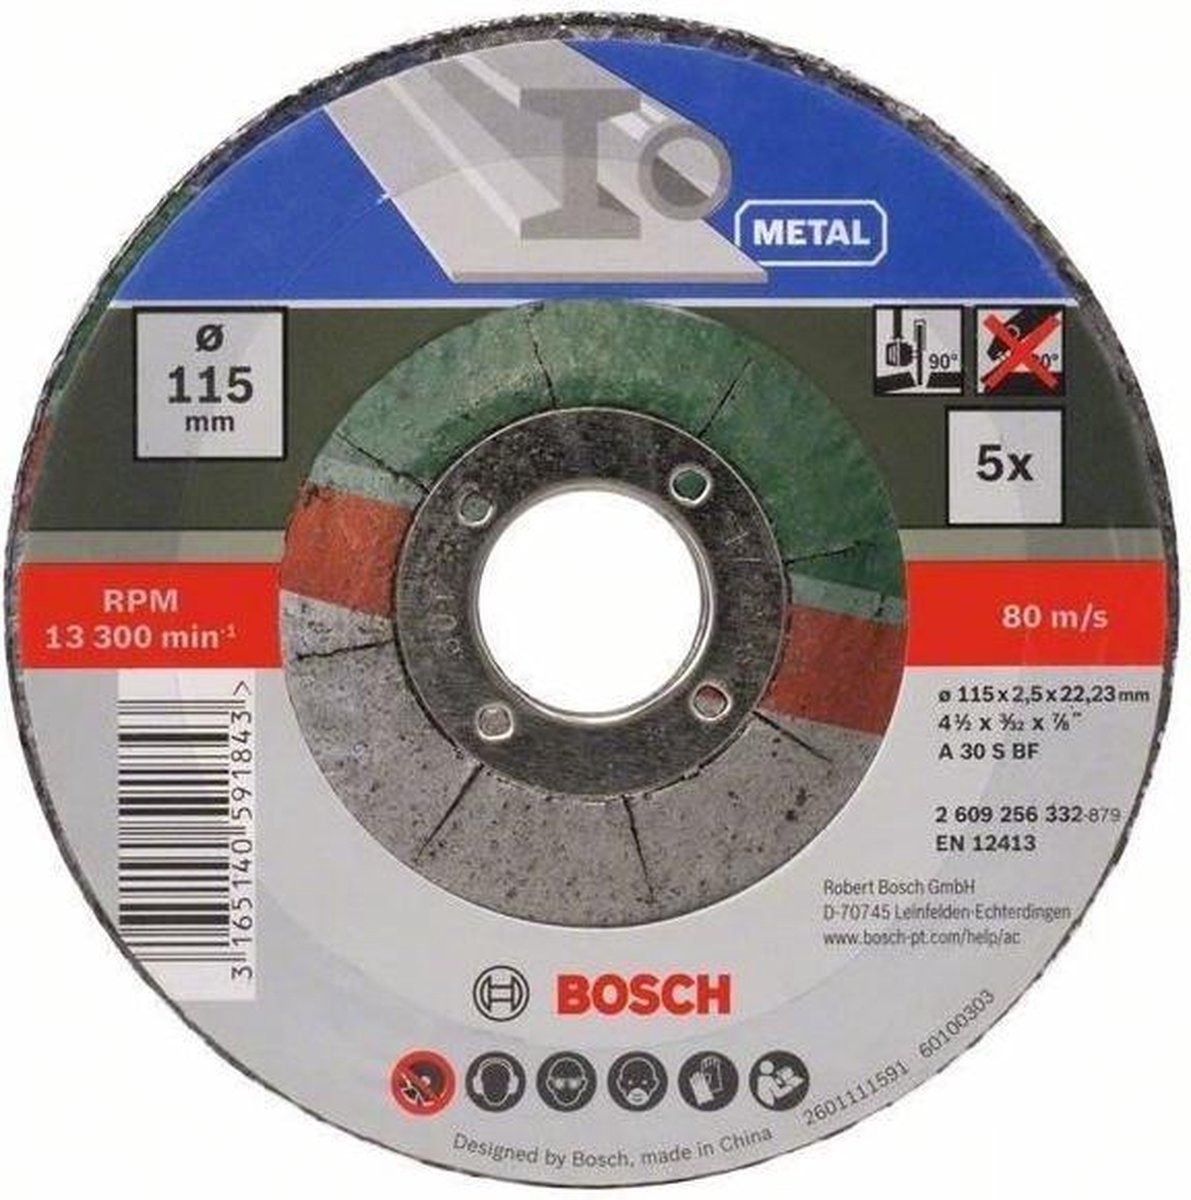 Bosch Slijpschijf Metaal 115 mm 5 stuks